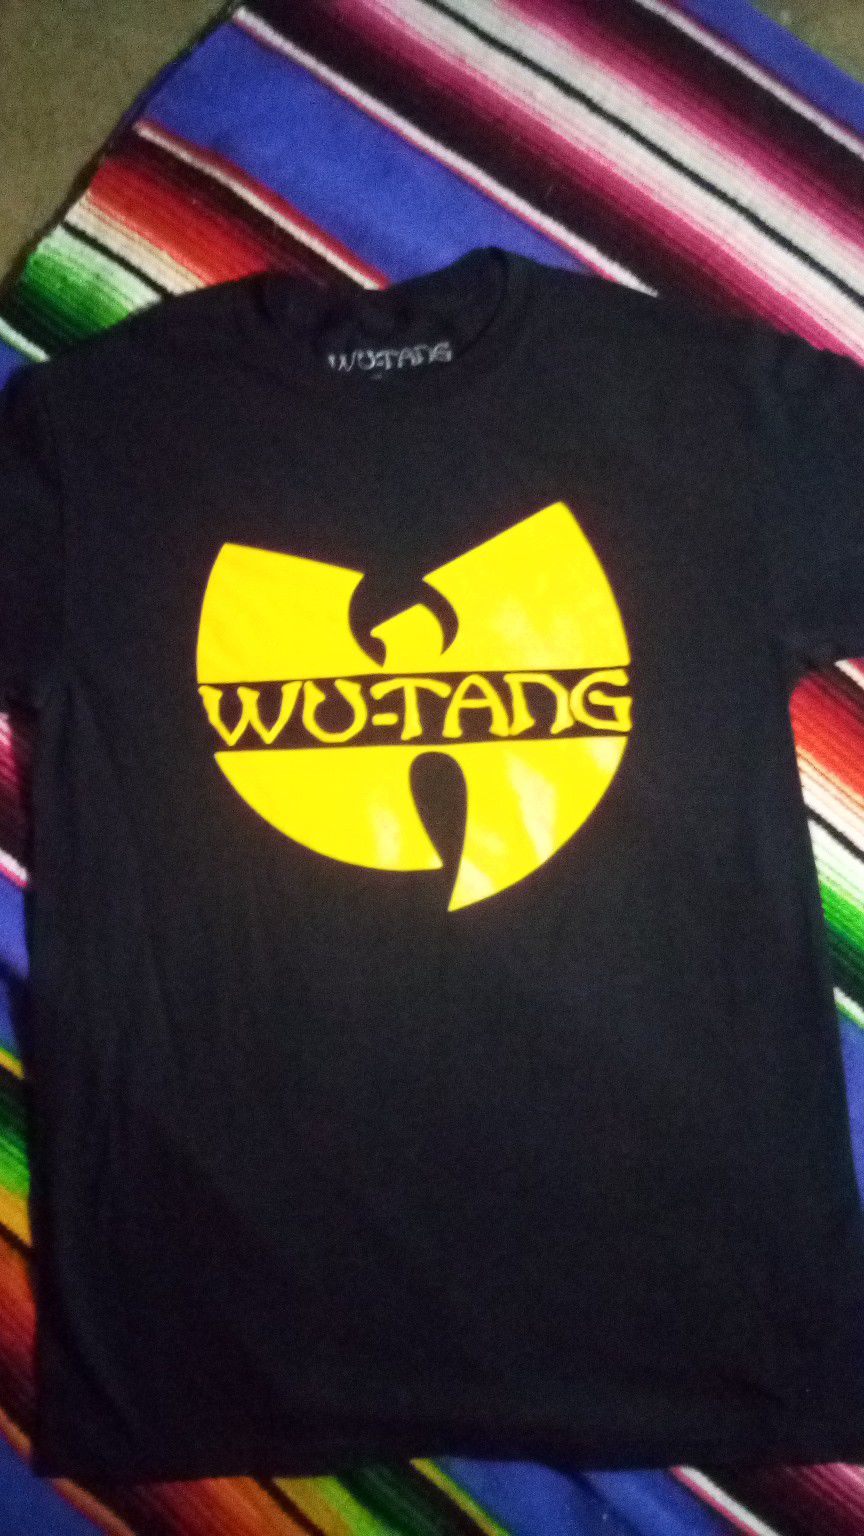 Wu-Tang clan t-shirt